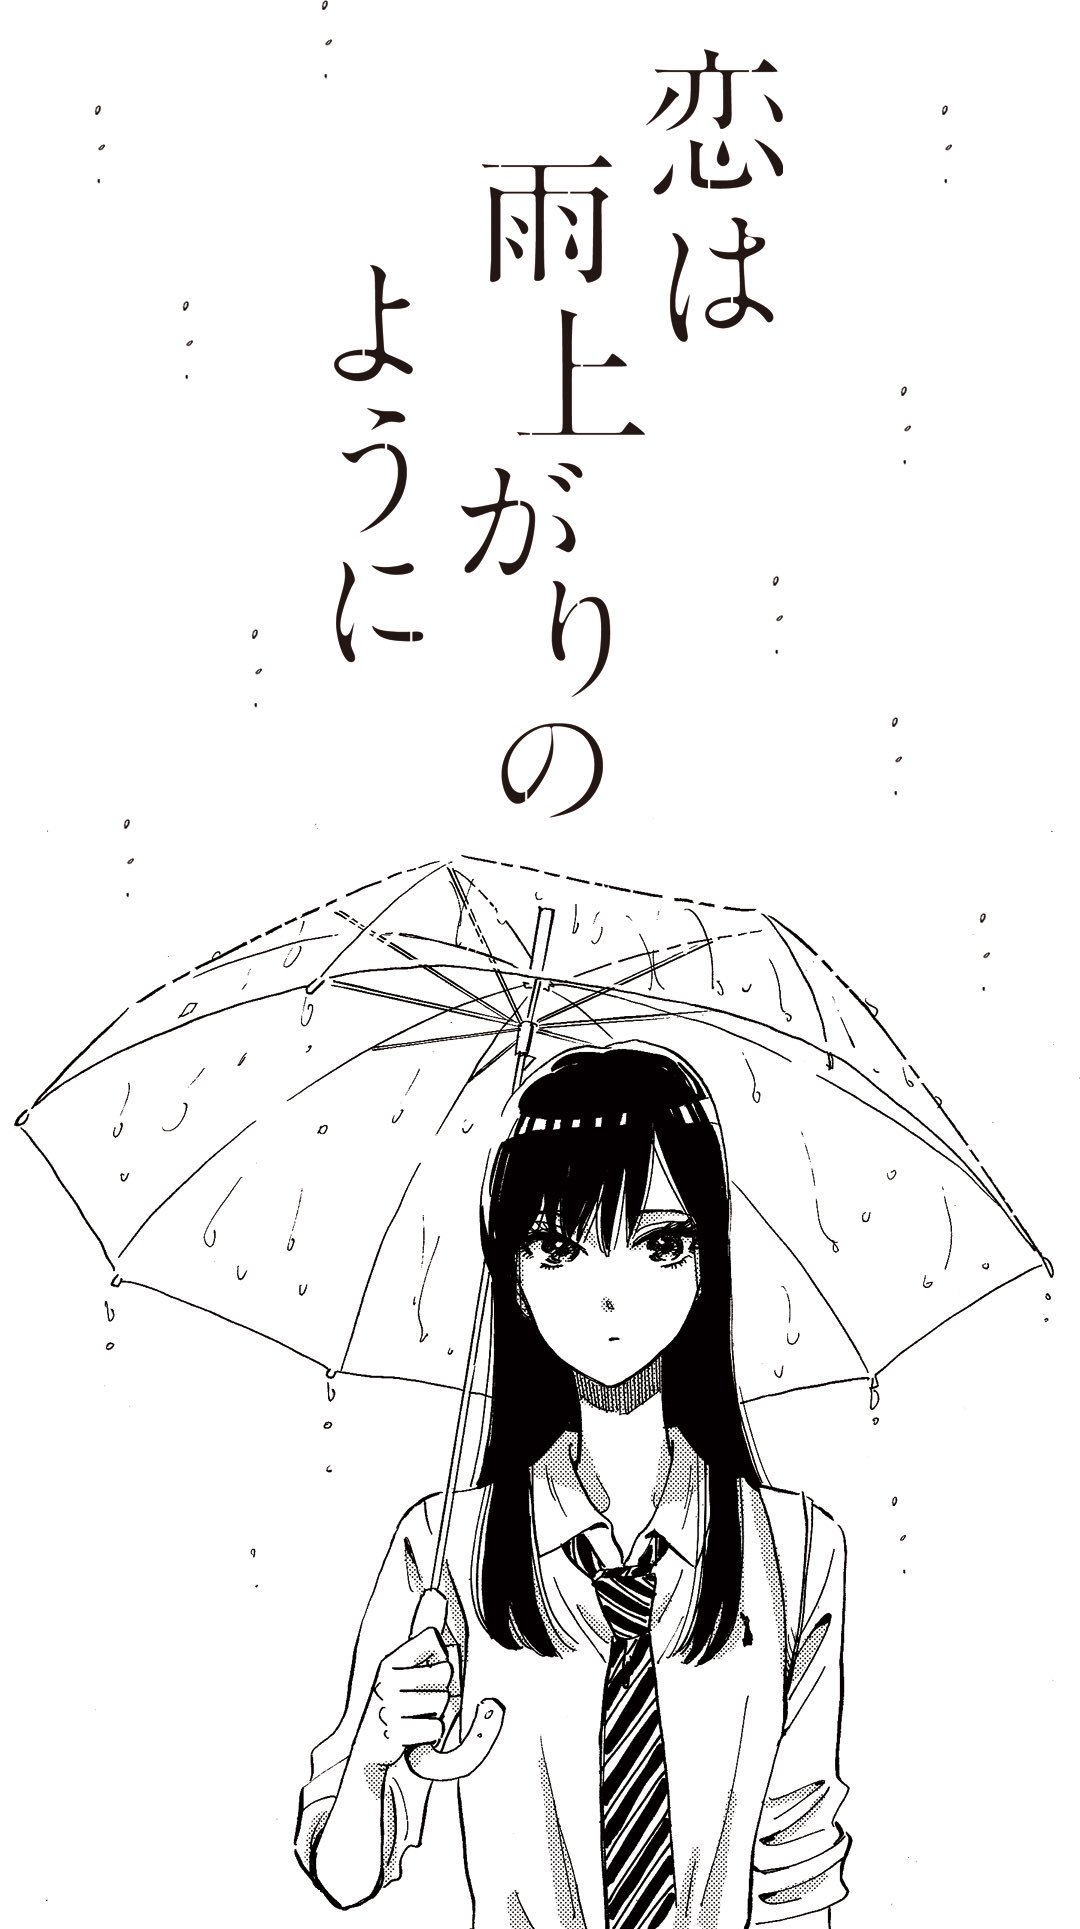 九龍ジェネリックロマンス 恋雨 公式 Twitterren 恋雨壁紙で梅雨を乗り切ろう ੭ ੭